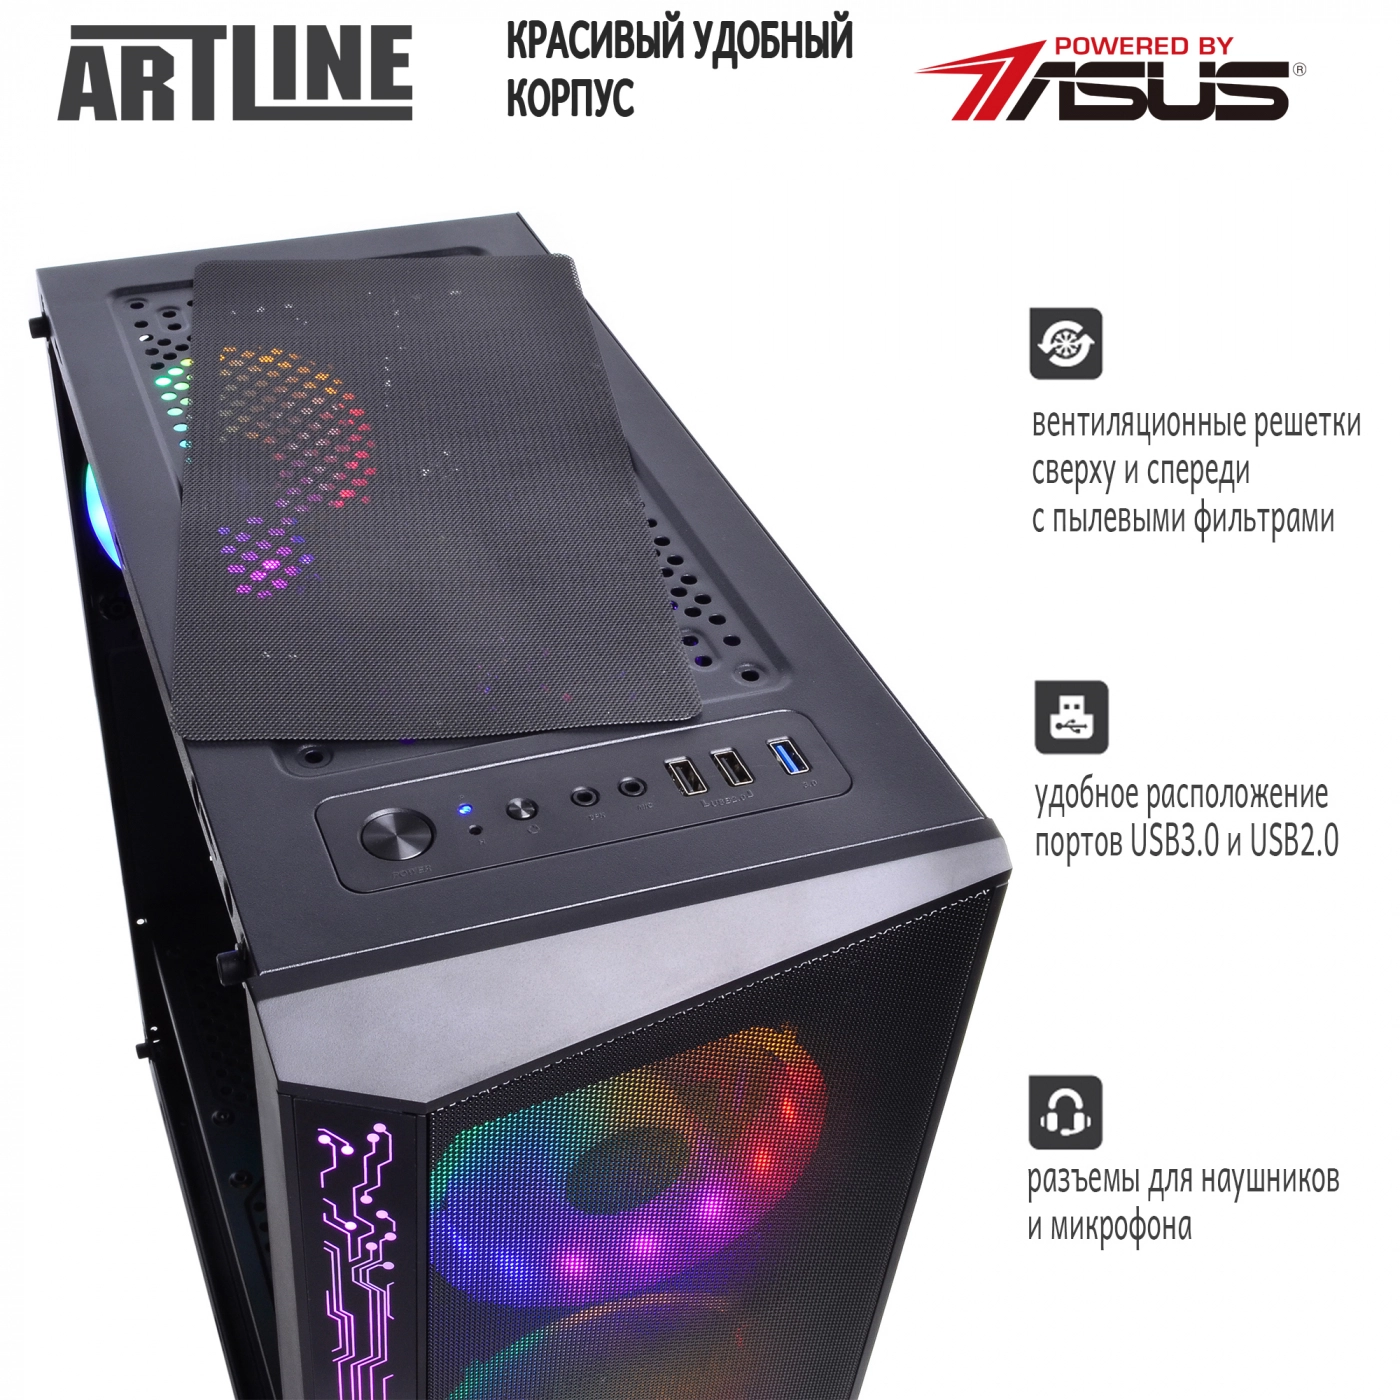 Купить Компьютер ARTLINE Gaming X33v04 - фото 5